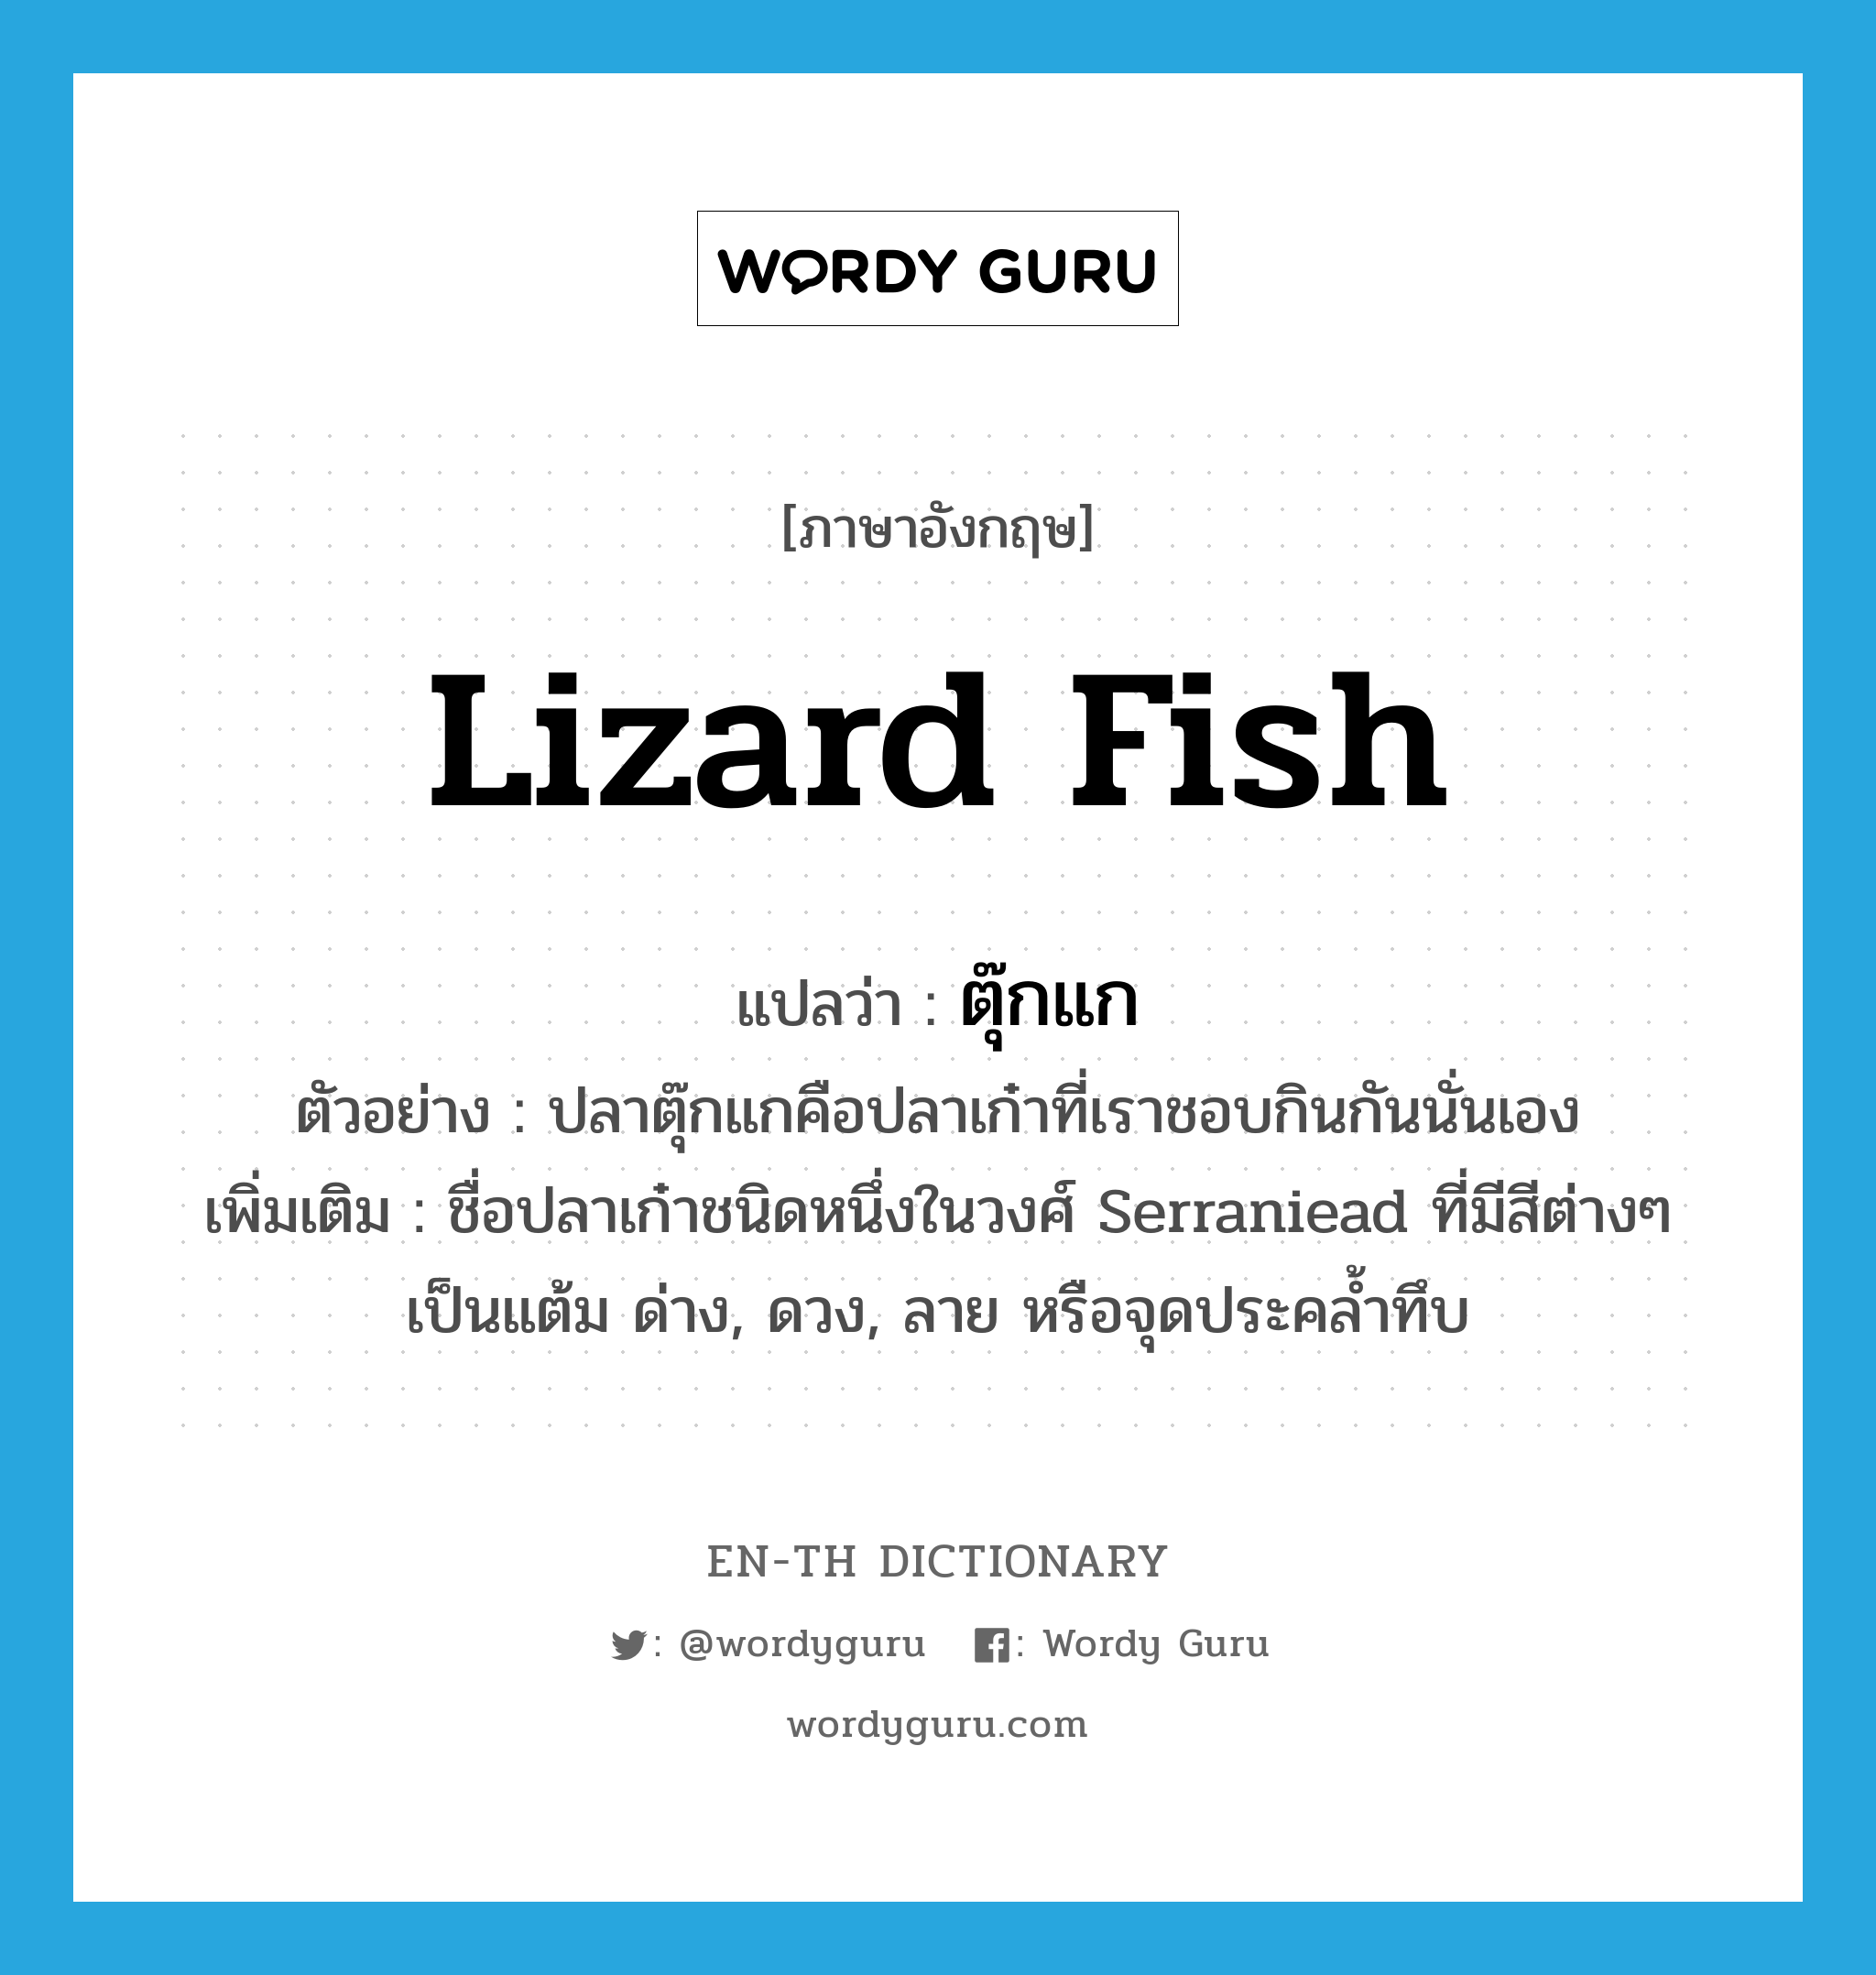 lizard fish แปลว่า?, คำศัพท์ภาษาอังกฤษ lizard fish แปลว่า ตุ๊กแก ประเภท N ตัวอย่าง ปลาตุ๊กแกคือปลาเก๋าที่เราชอบกินกันนั่นเอง เพิ่มเติม ชื่อปลาเก๋าชนิดหนึ่งในวงศ์ Serraniead ที่มีสีต่างๆ เป็นแต้ม ด่าง, ดวง, ลาย หรือจุดประคล้ำทึบ หมวด N